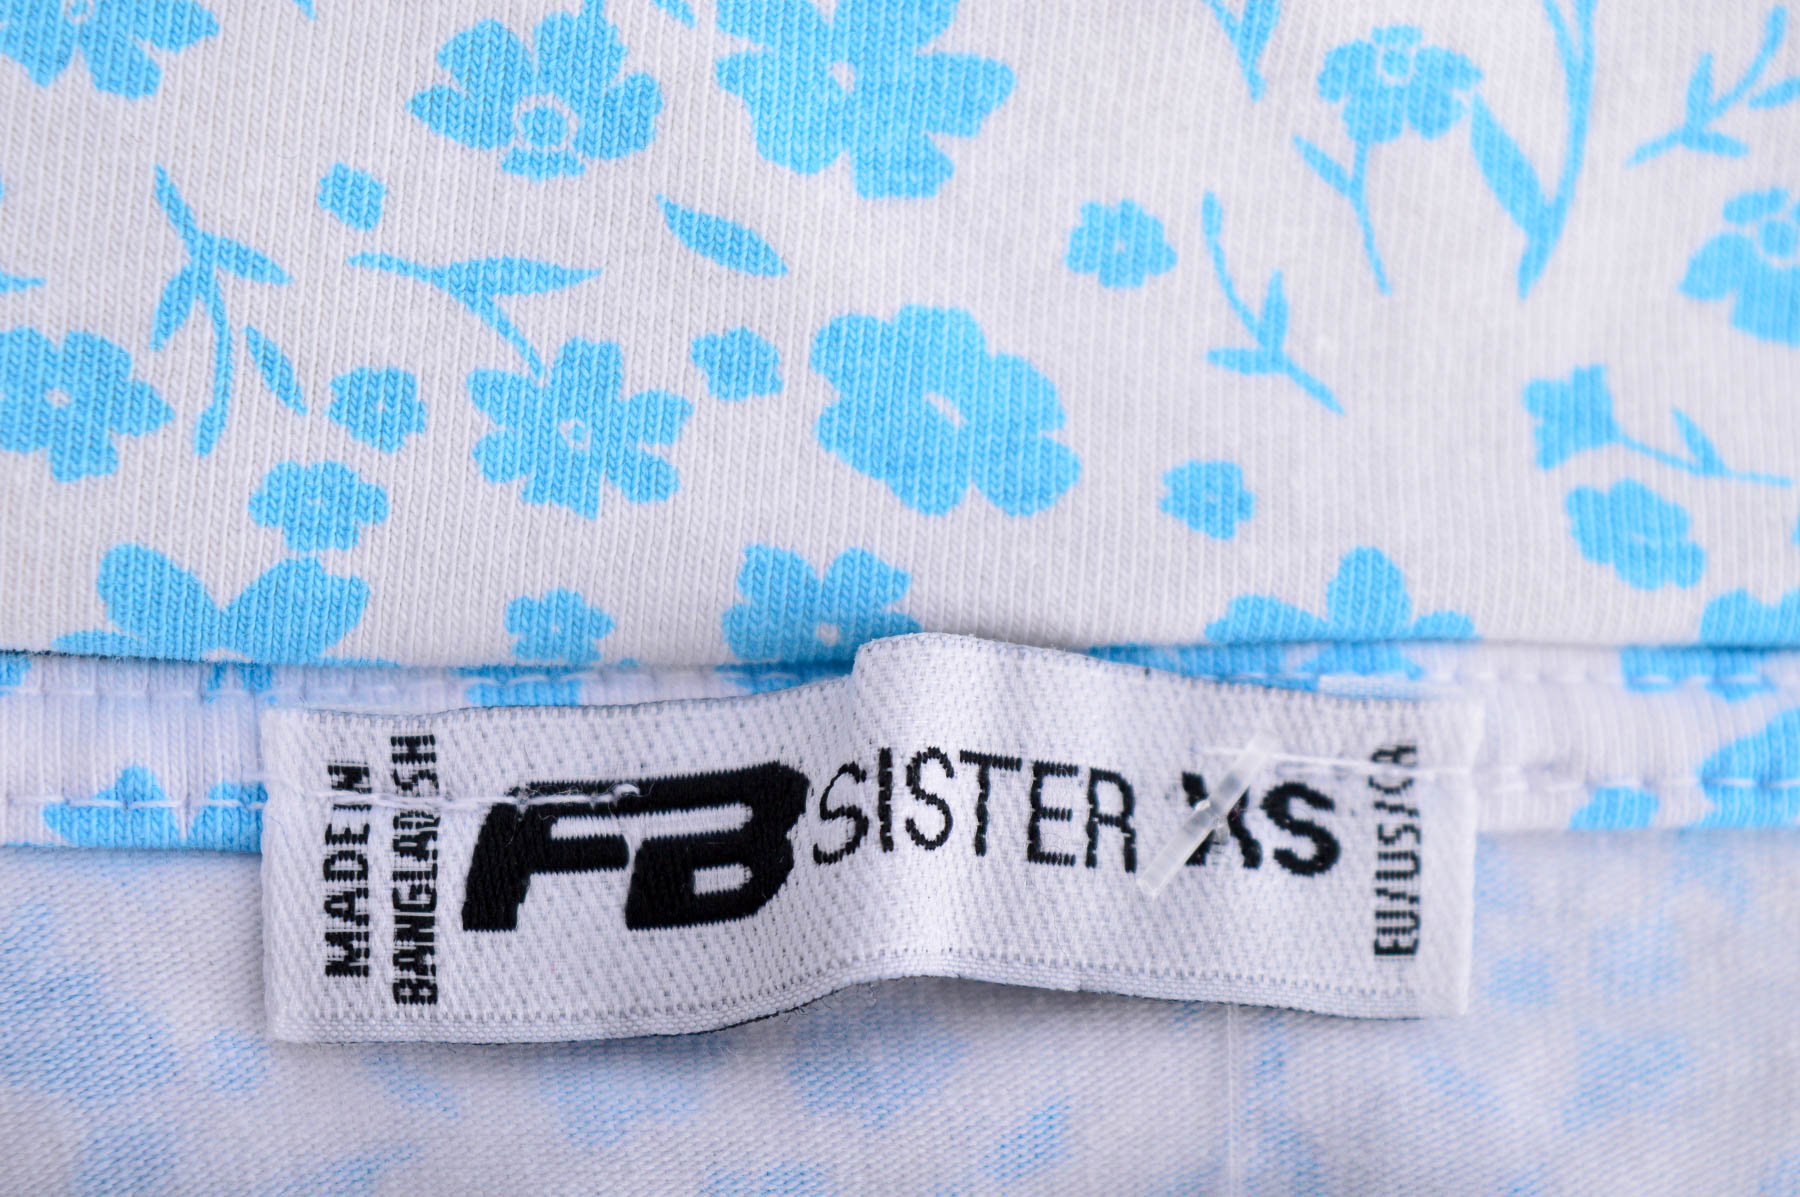 Tricou de damă - FB Sister - 2